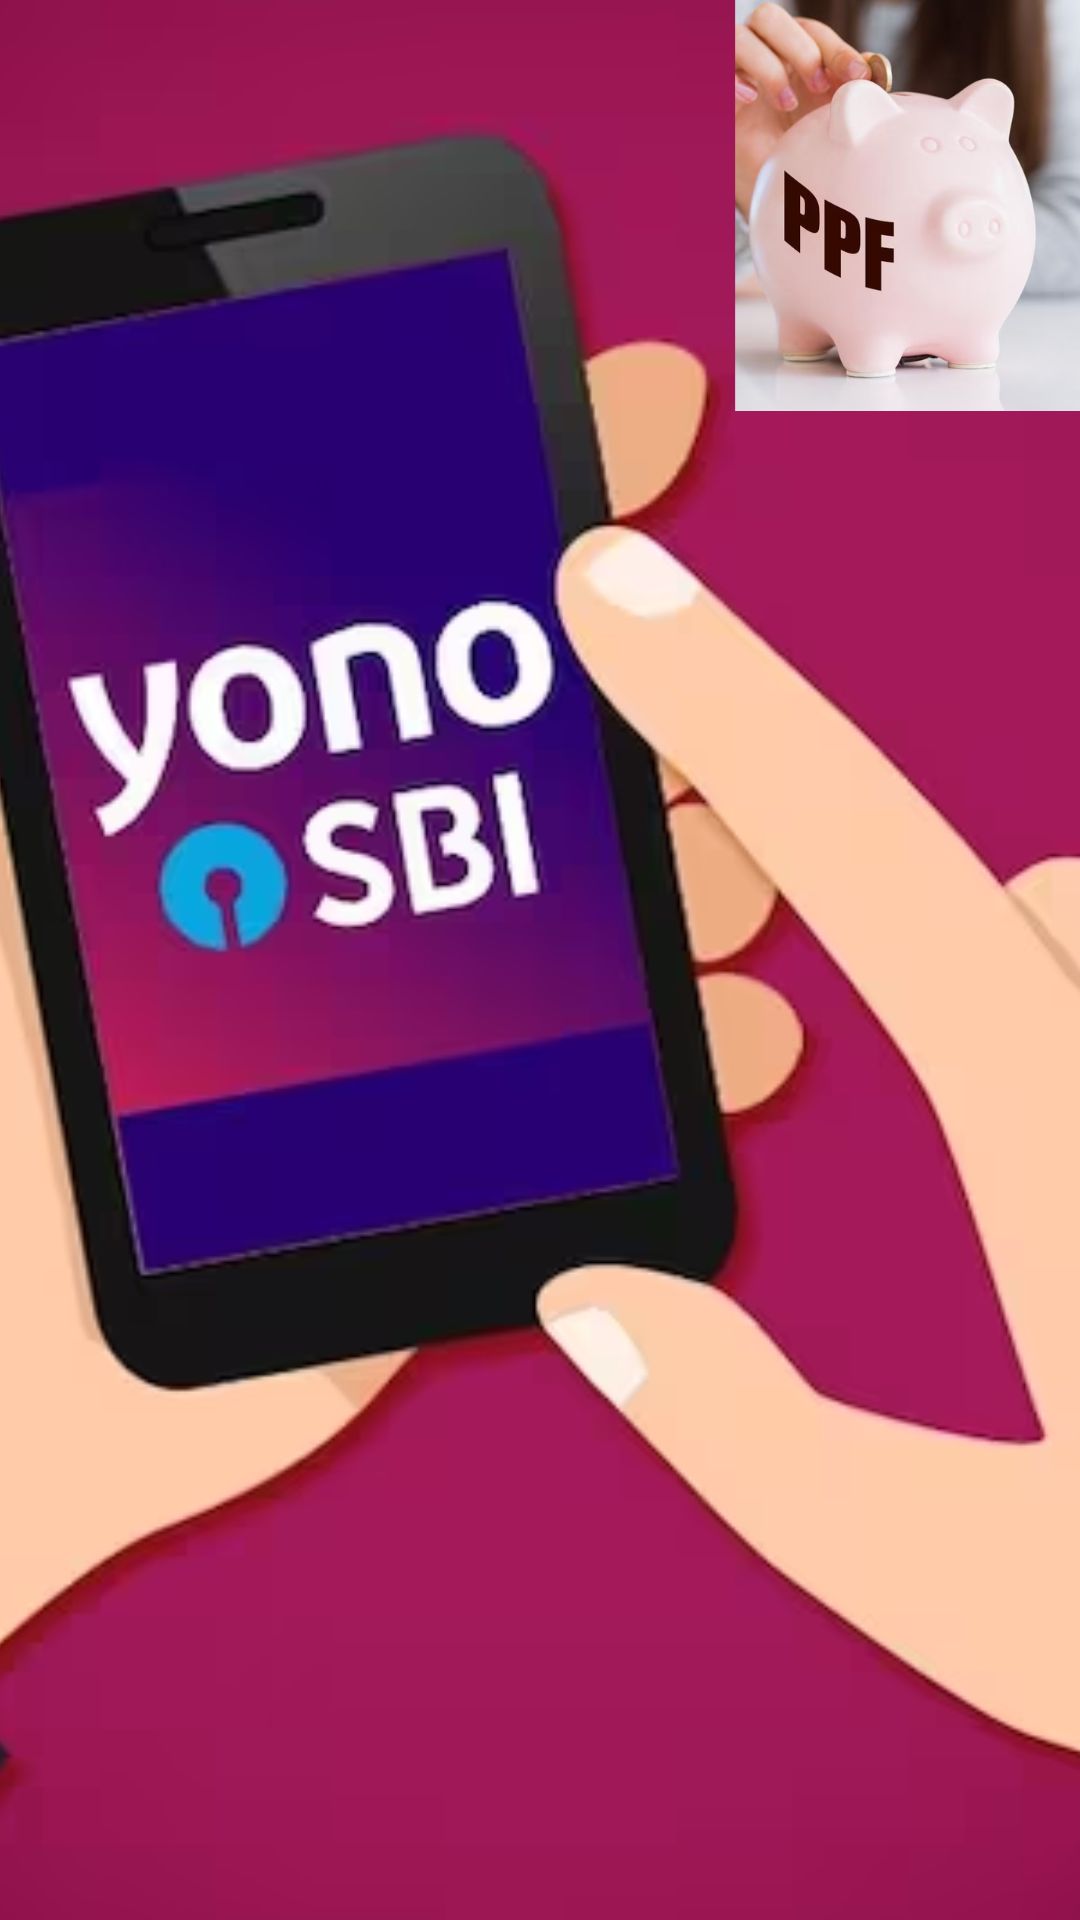 SBI Yono App से PPF खाता कैसे खोलें, जानें यहां 